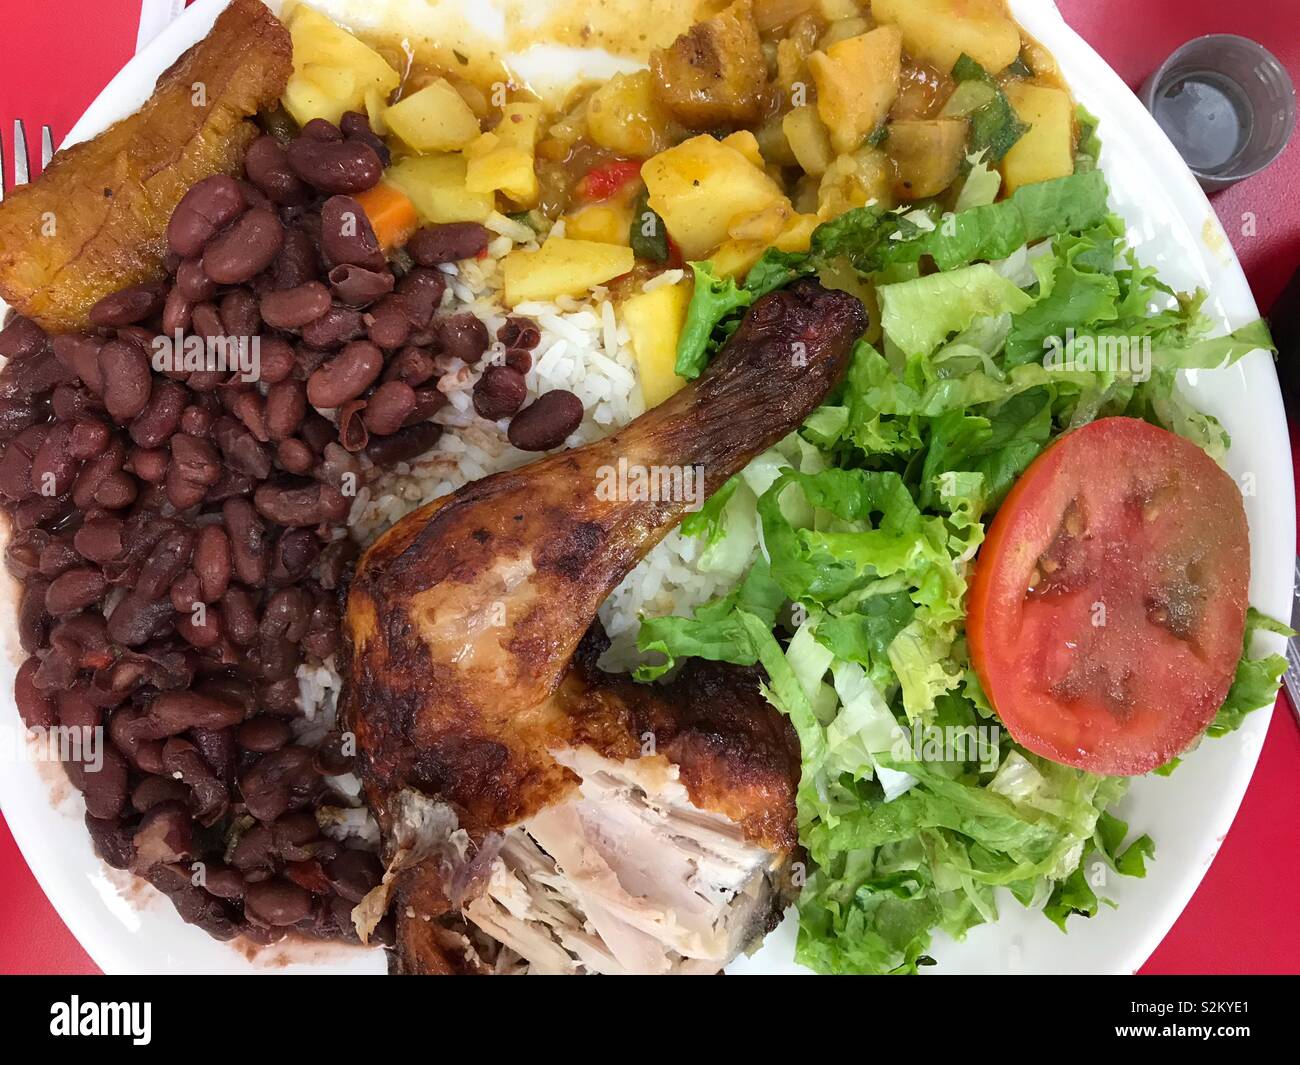 Un gros plan d'un déjeuner typique du Costa Rica complet avec du poulet rôti, haricots verts, salade verte, pommes de terre, et le plantain frit. Oops, quelqu'un a pris une bouchée du poulet ! Banque D'Images